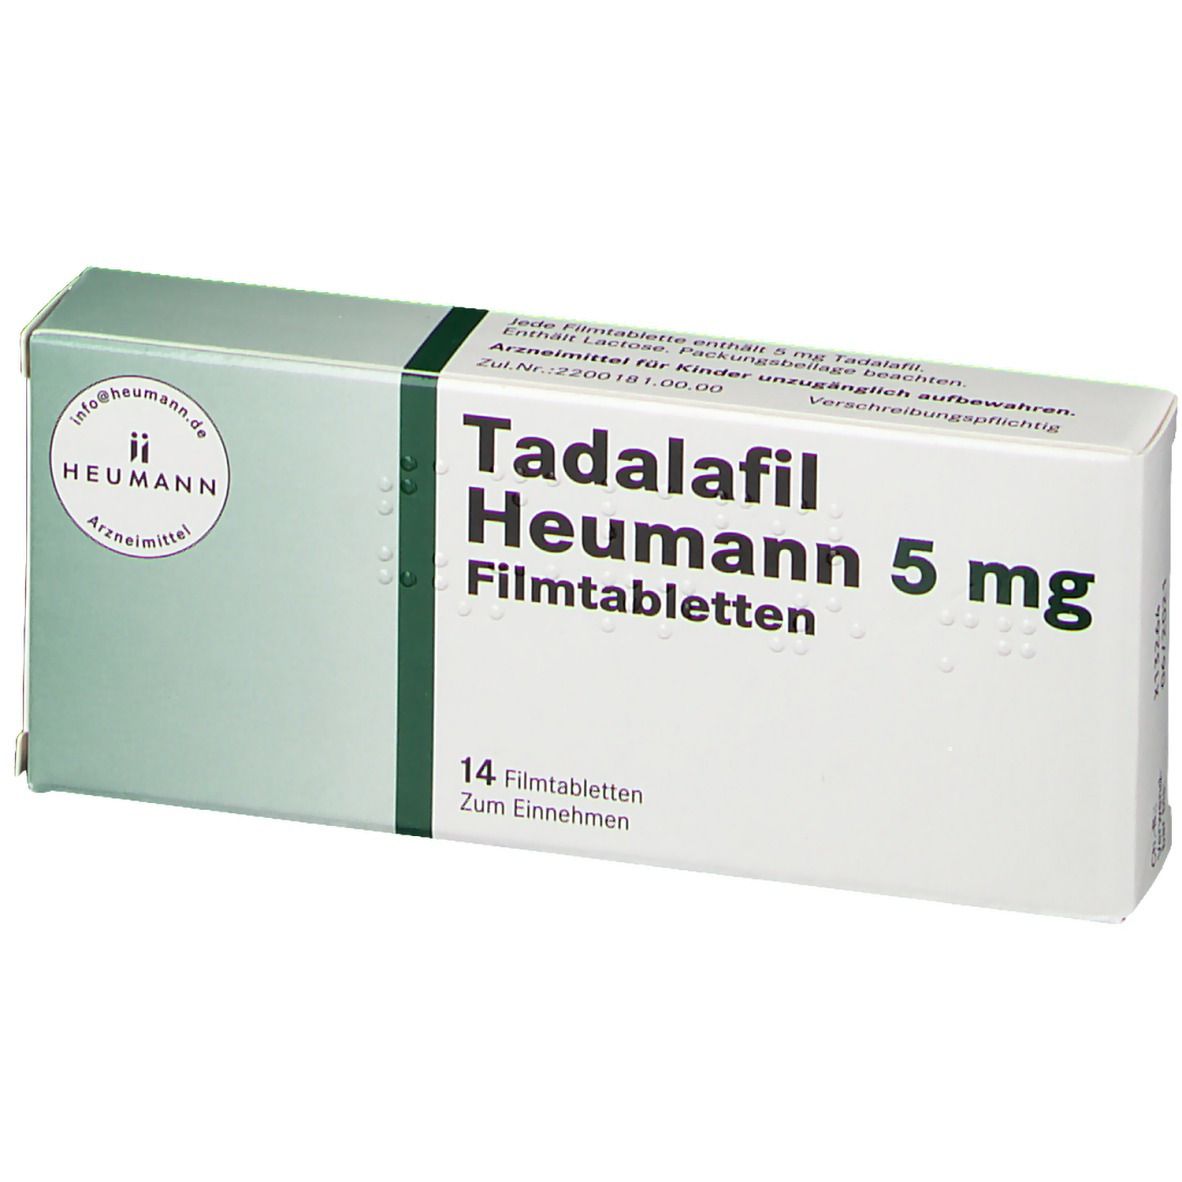 Tadalafil Heumann 5 mg